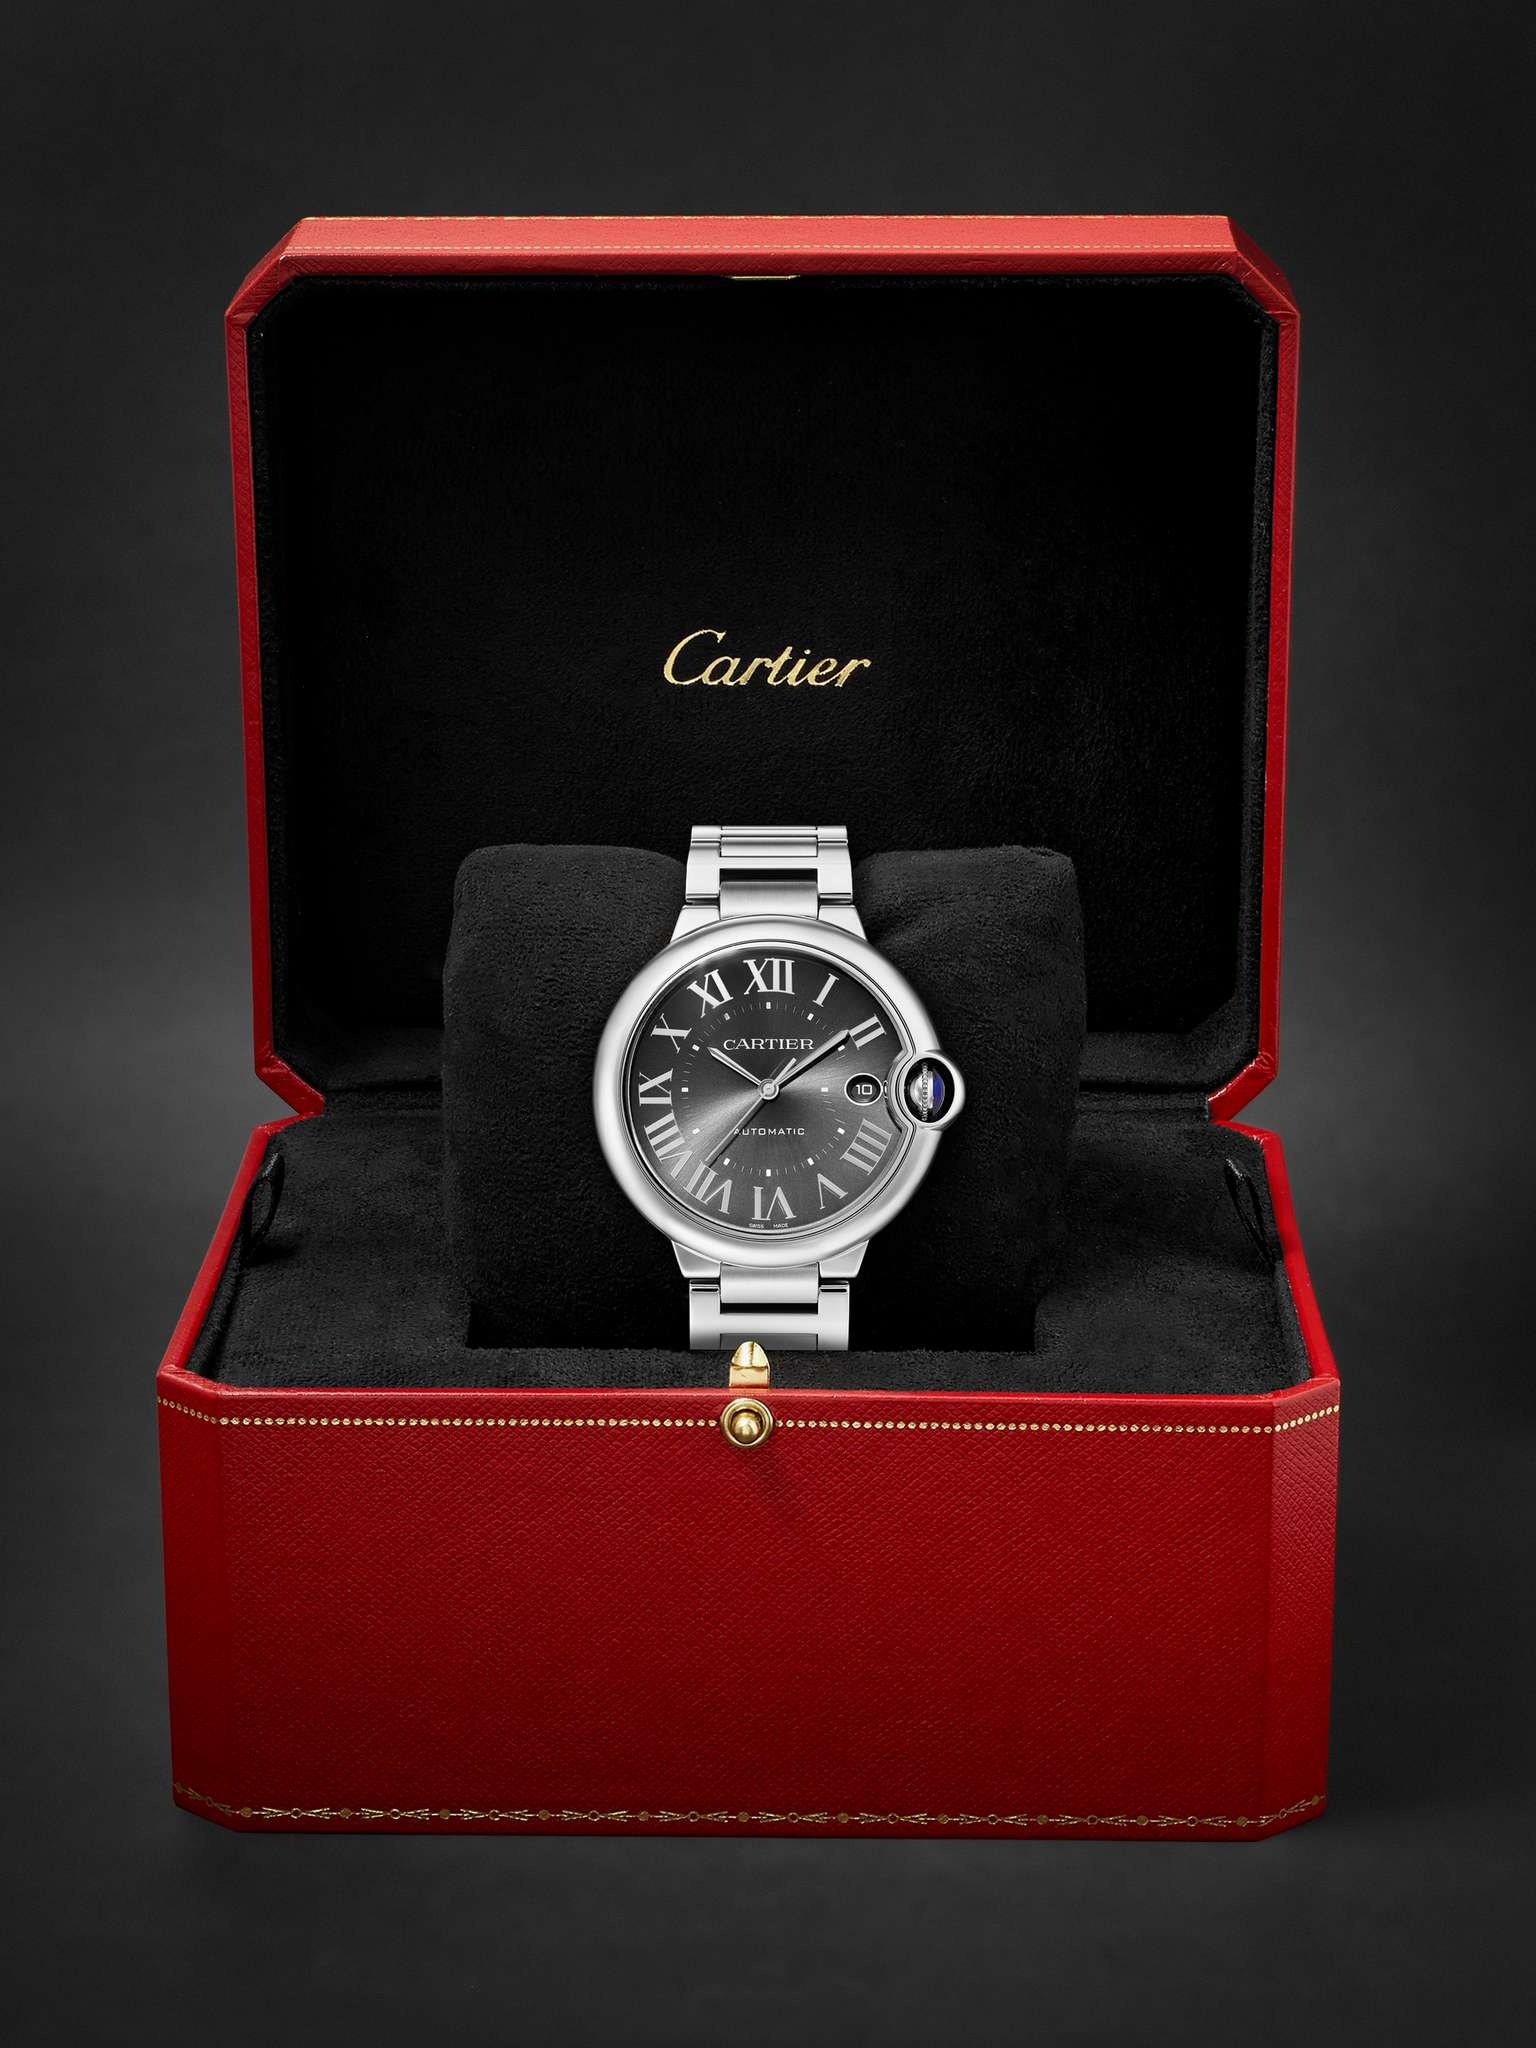 Ballon Bleu de Cartier Automatic 40mm Stainless Steel Watch, Ref. No. WSBB0060 - 7